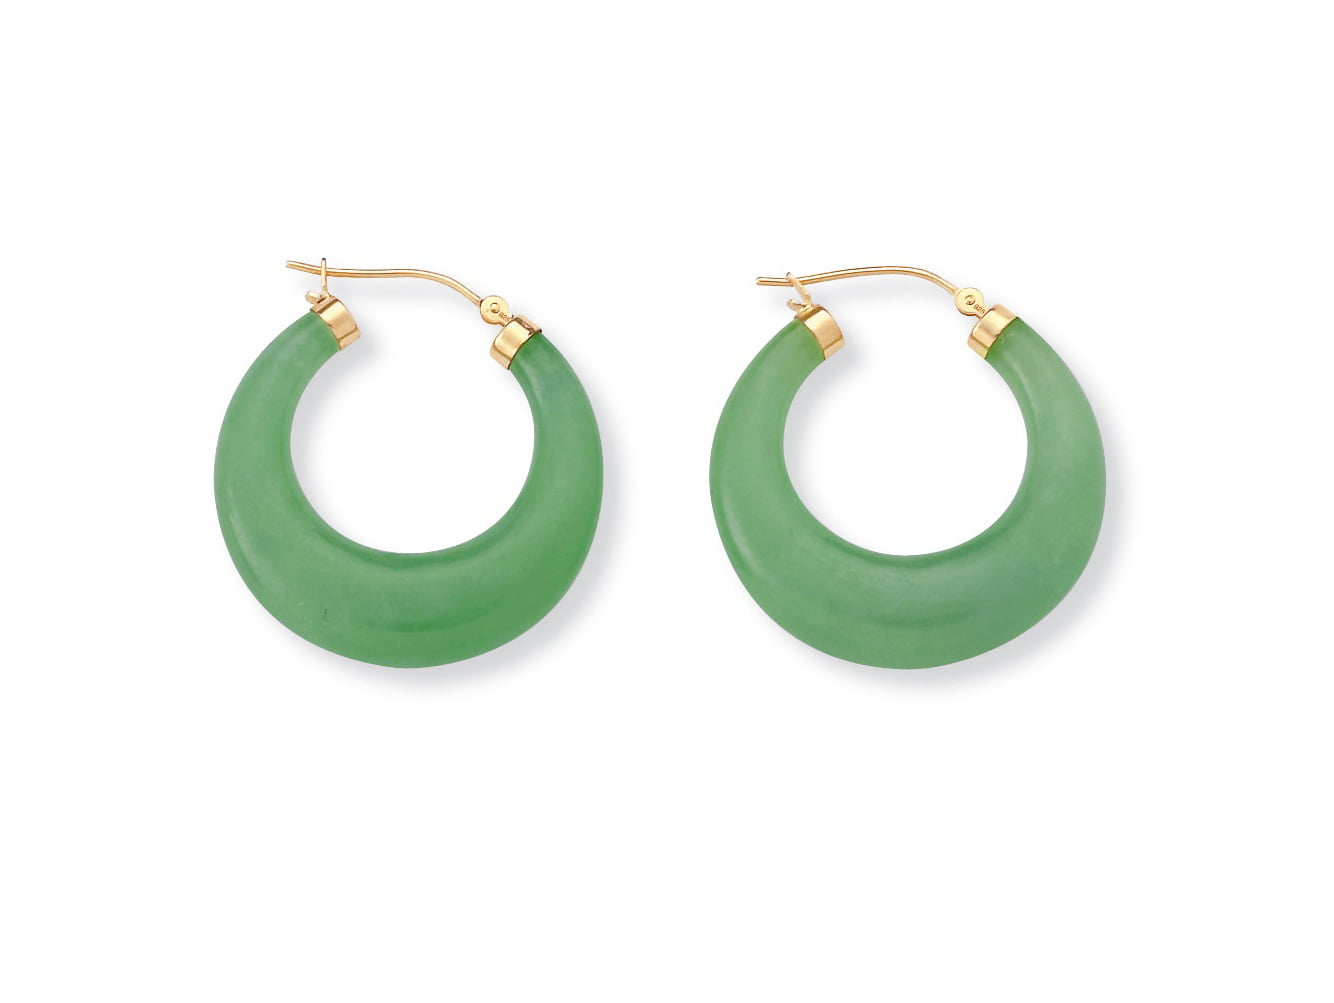 real jade earrings hoop earrings with gemstone charm sterling silver hoop earrings with beautiful aqua green jade charm light green jade